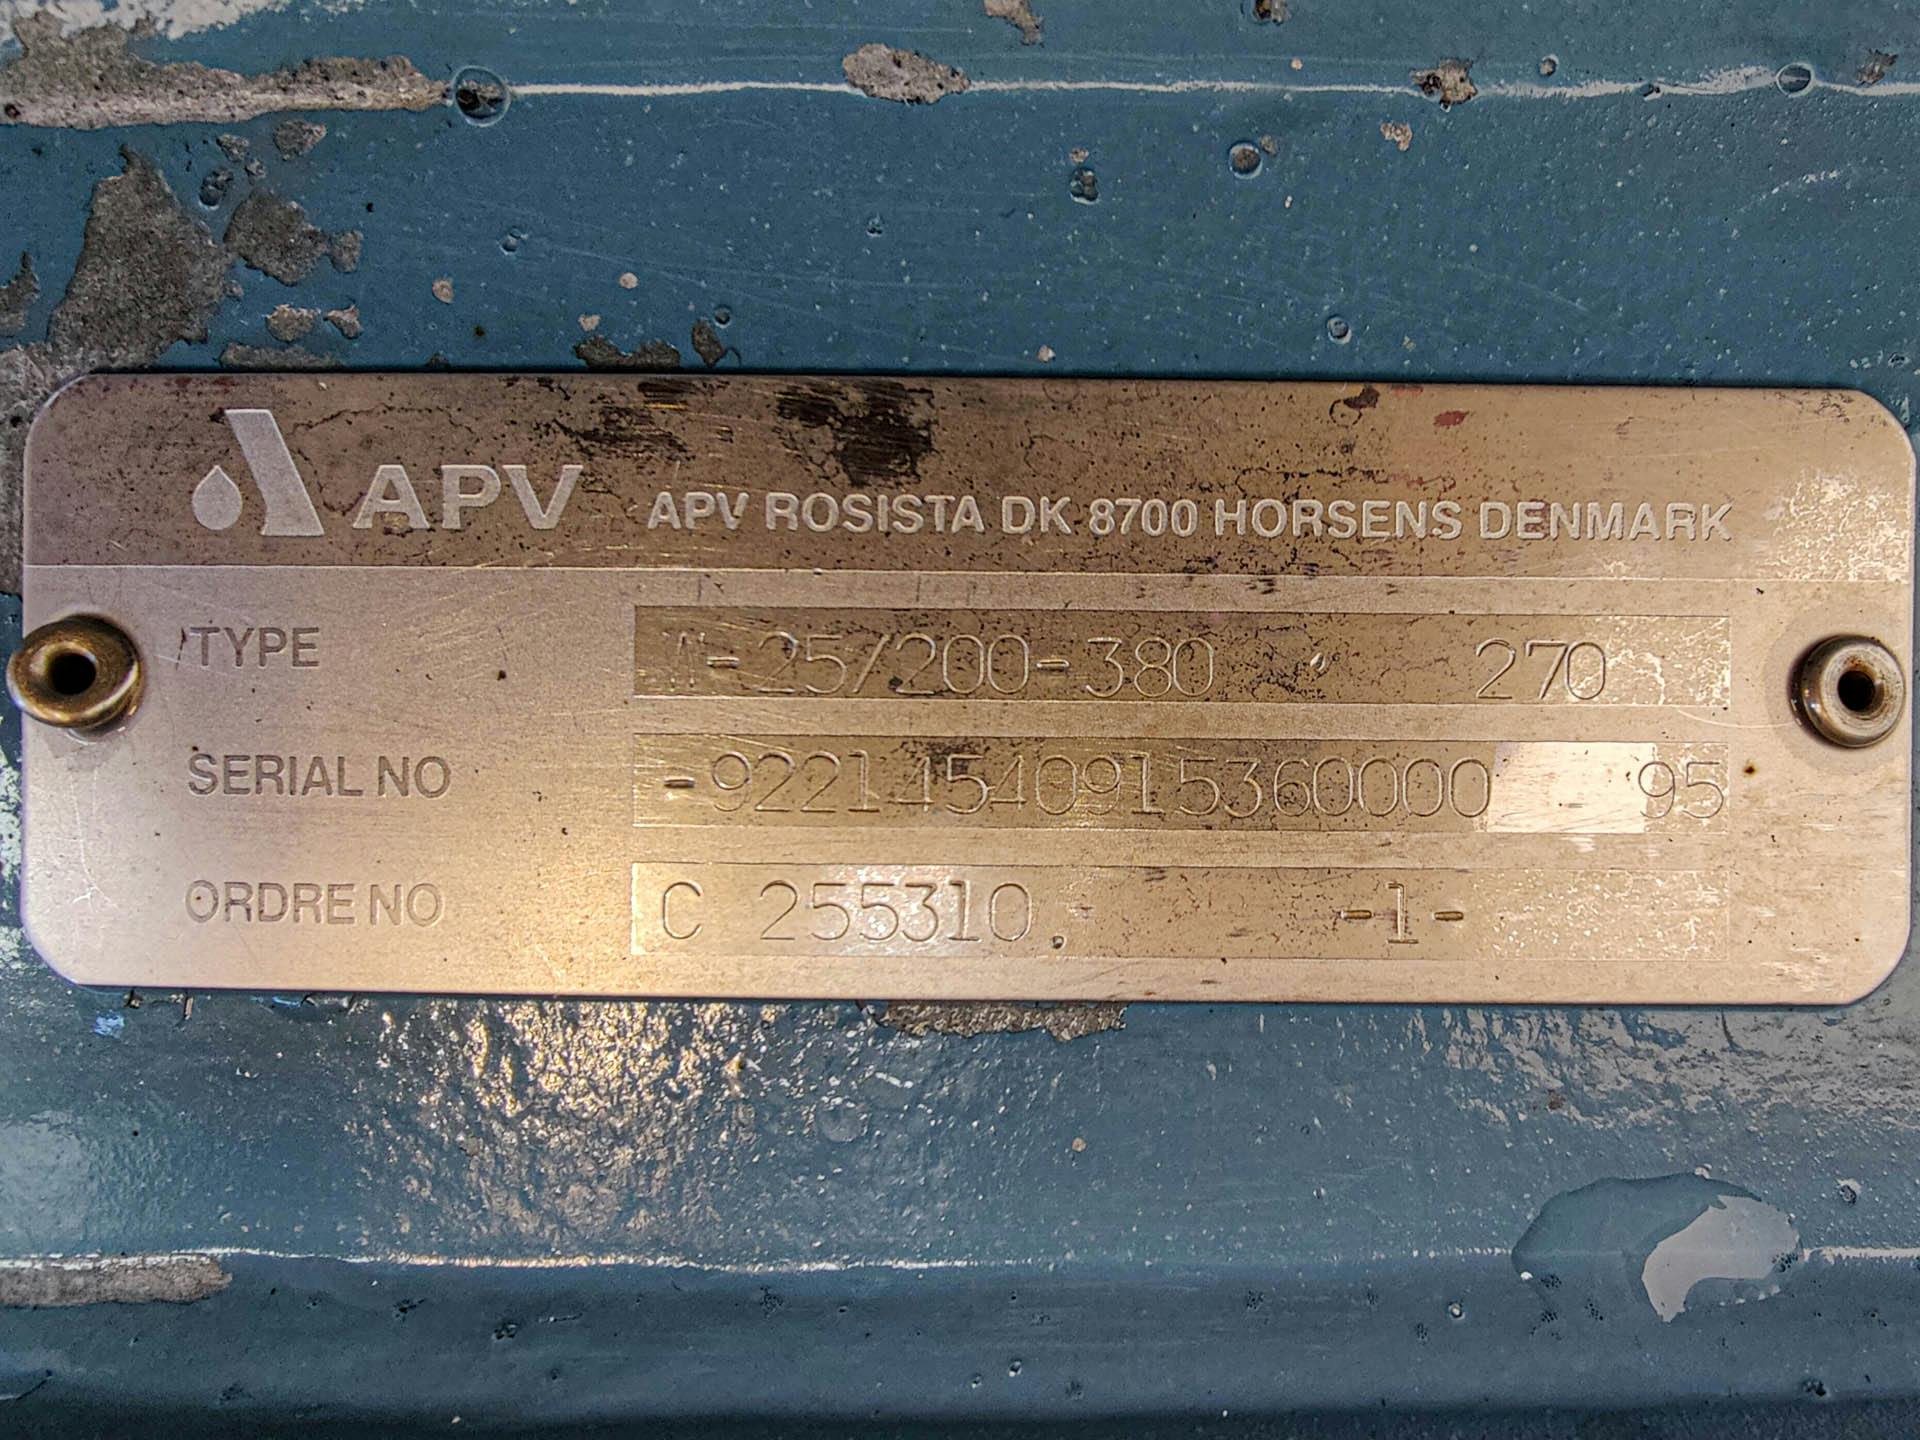 APV Rosista W-25/200-380 - Pompa centrifuga - image 6